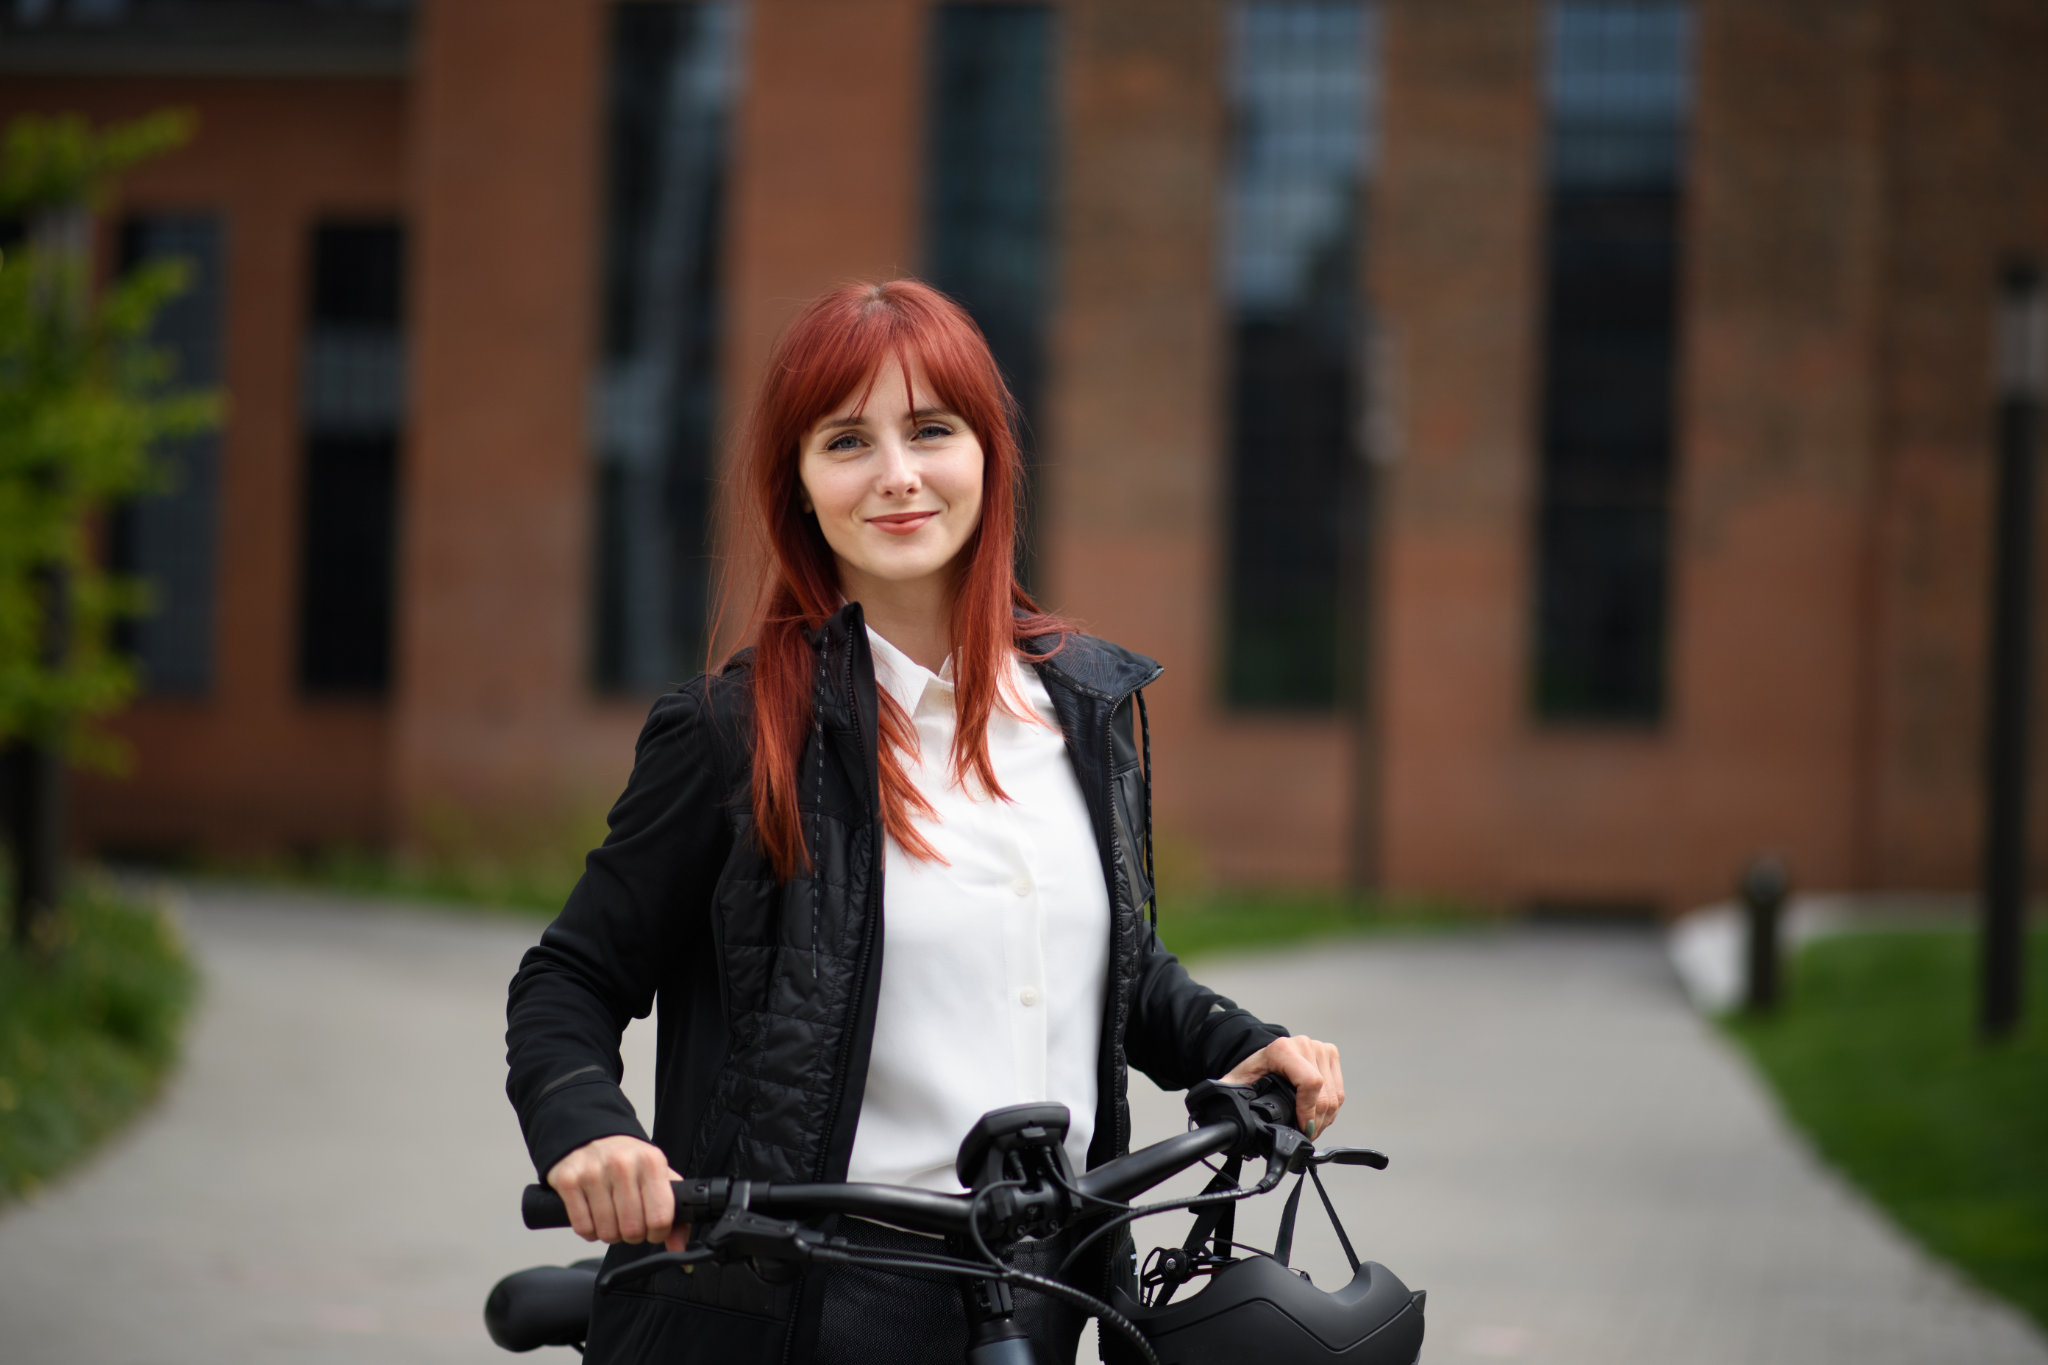 Un retrato de una mujer de negocios que viaja al trabajo en bicicleta mirando la cámara, un concepto de estilo de vida sostenible.